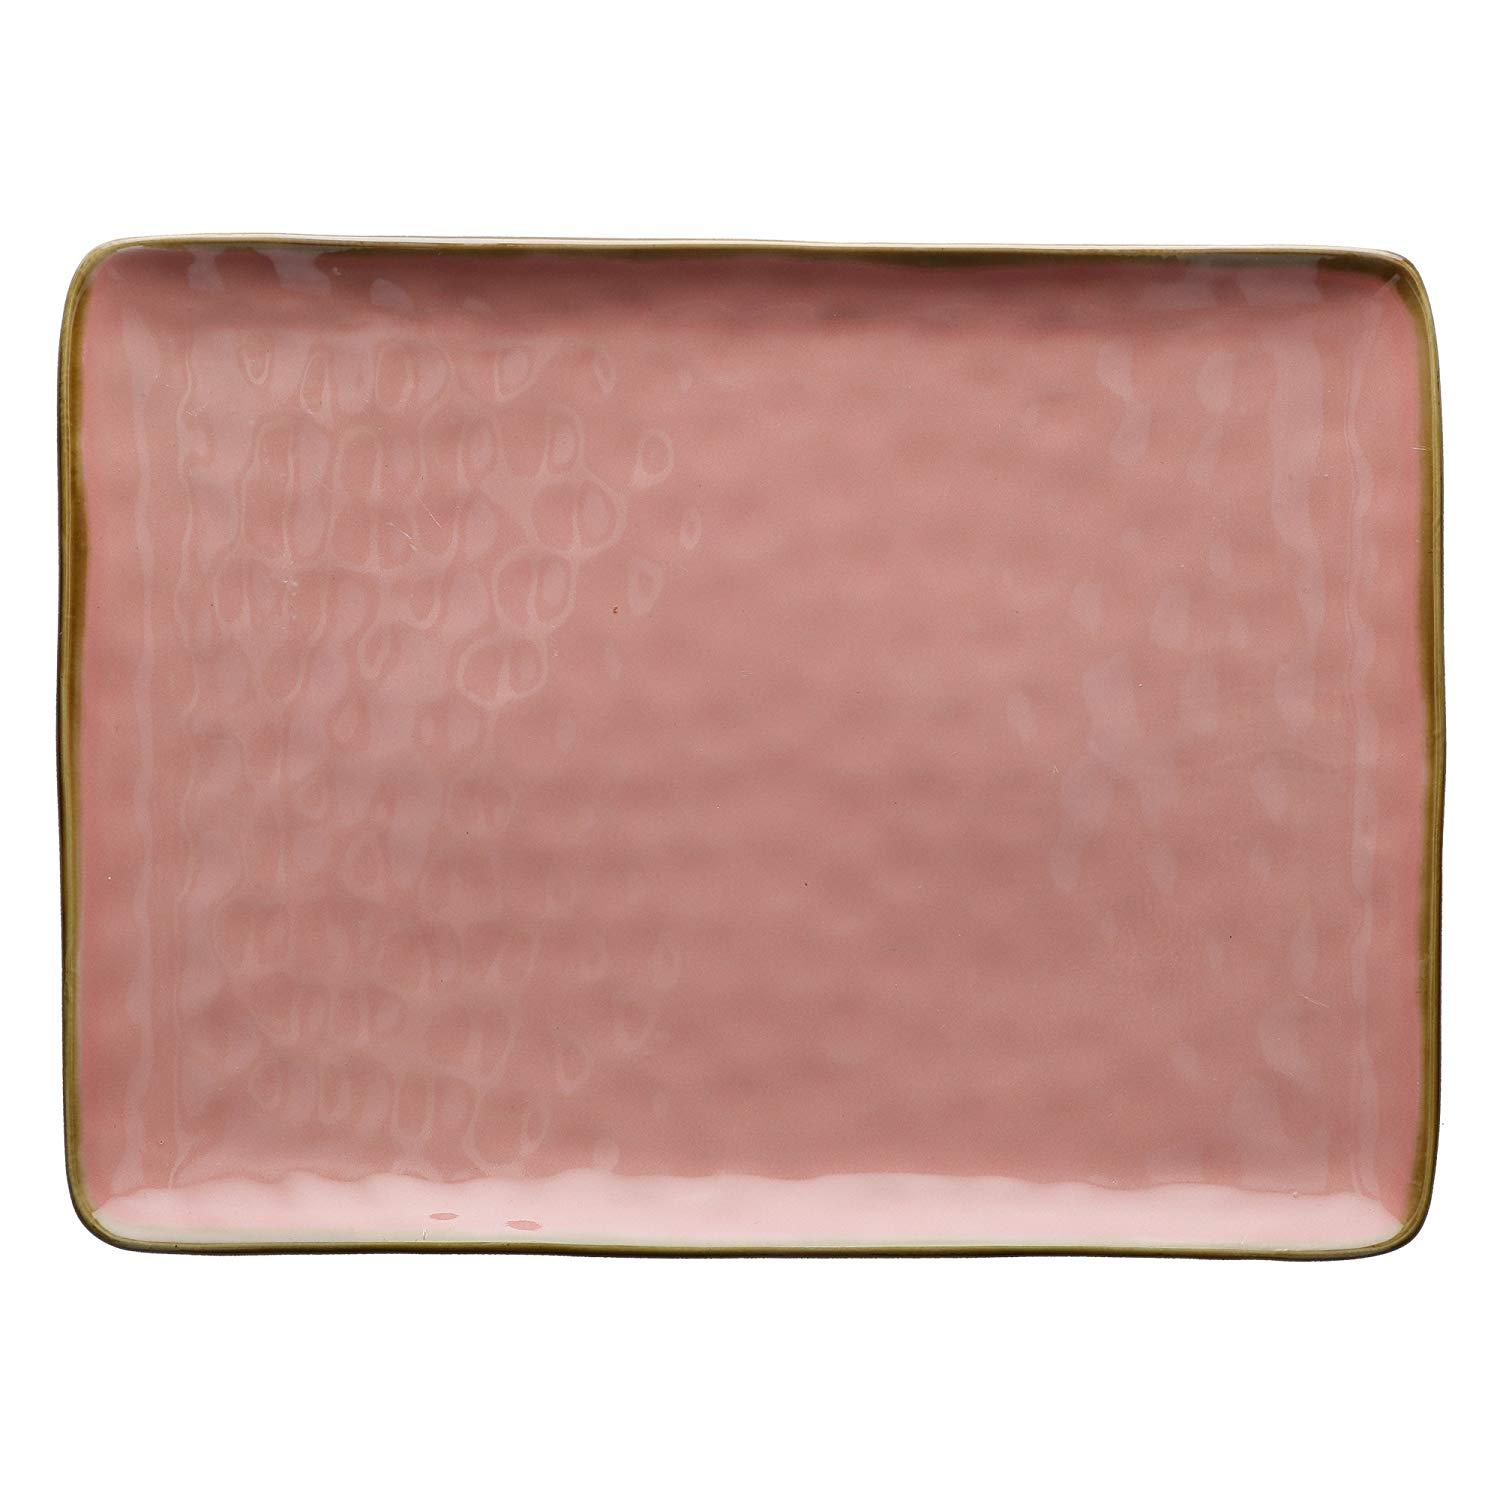 Piatto rettangolare vassoio 36 x 26,5 cm colore rosa antico cipria shabby chic - Dolci pensieri gift